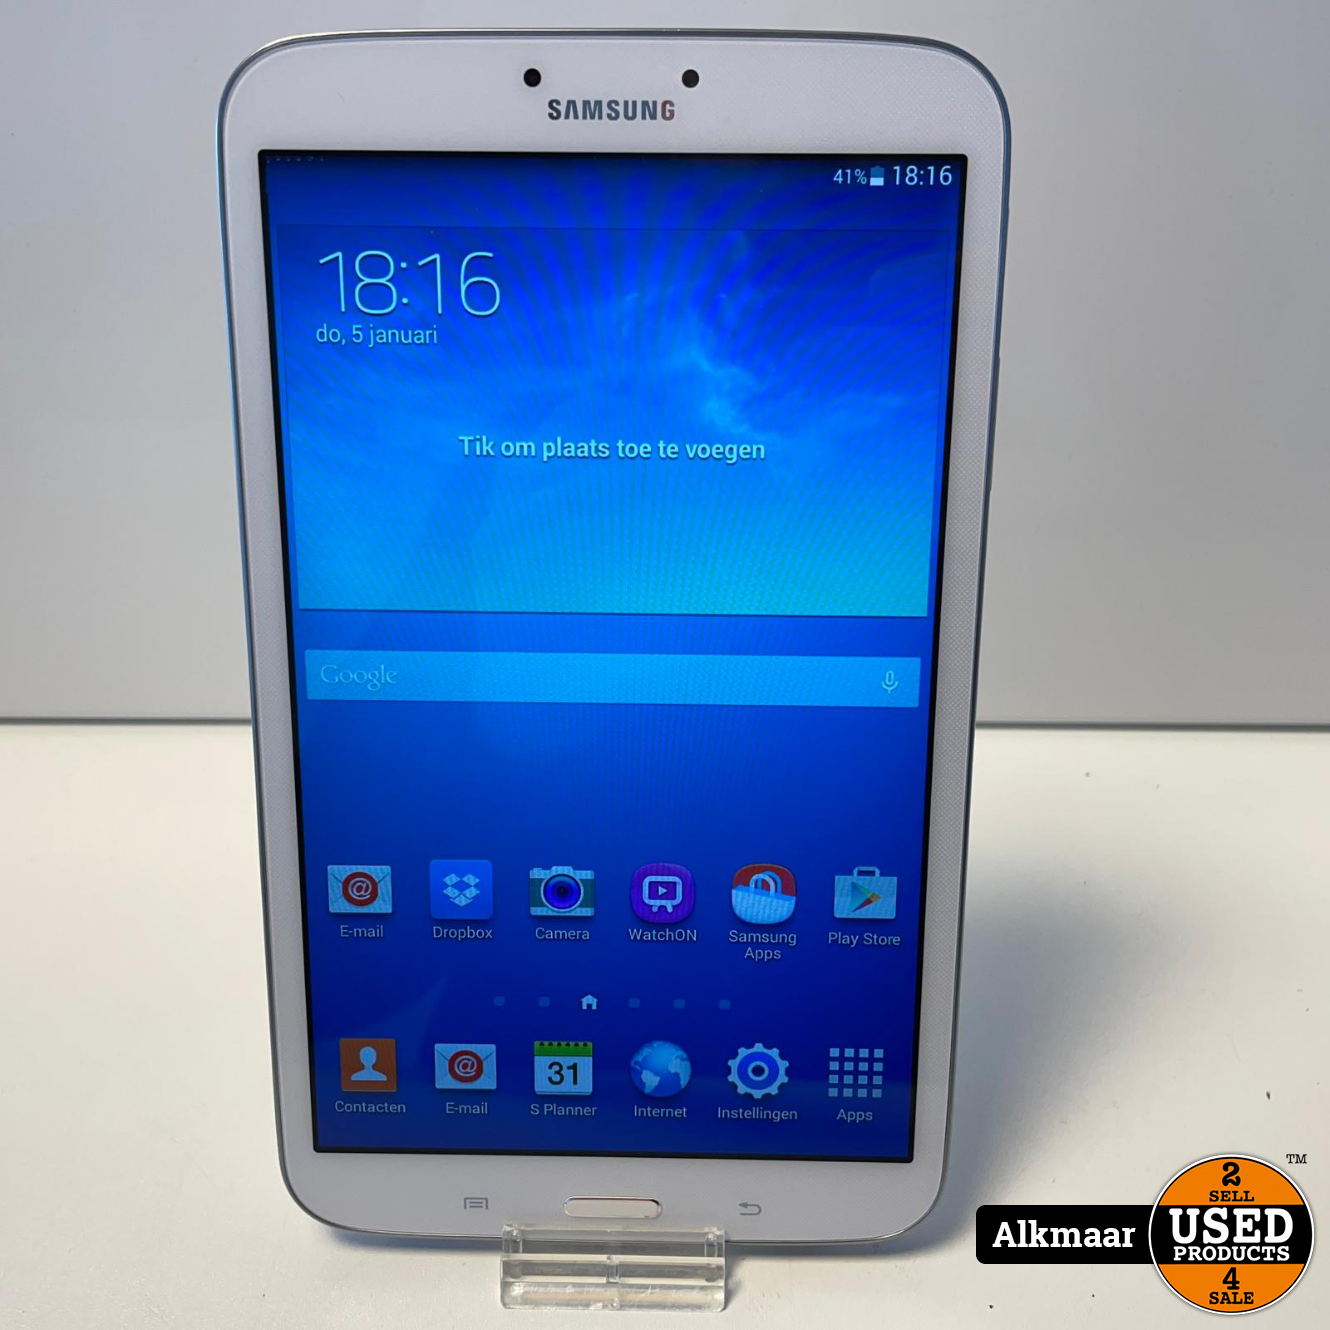 Samsung Galaxy 3 16GB 8.0 inch wit - Used Products Alkmaar